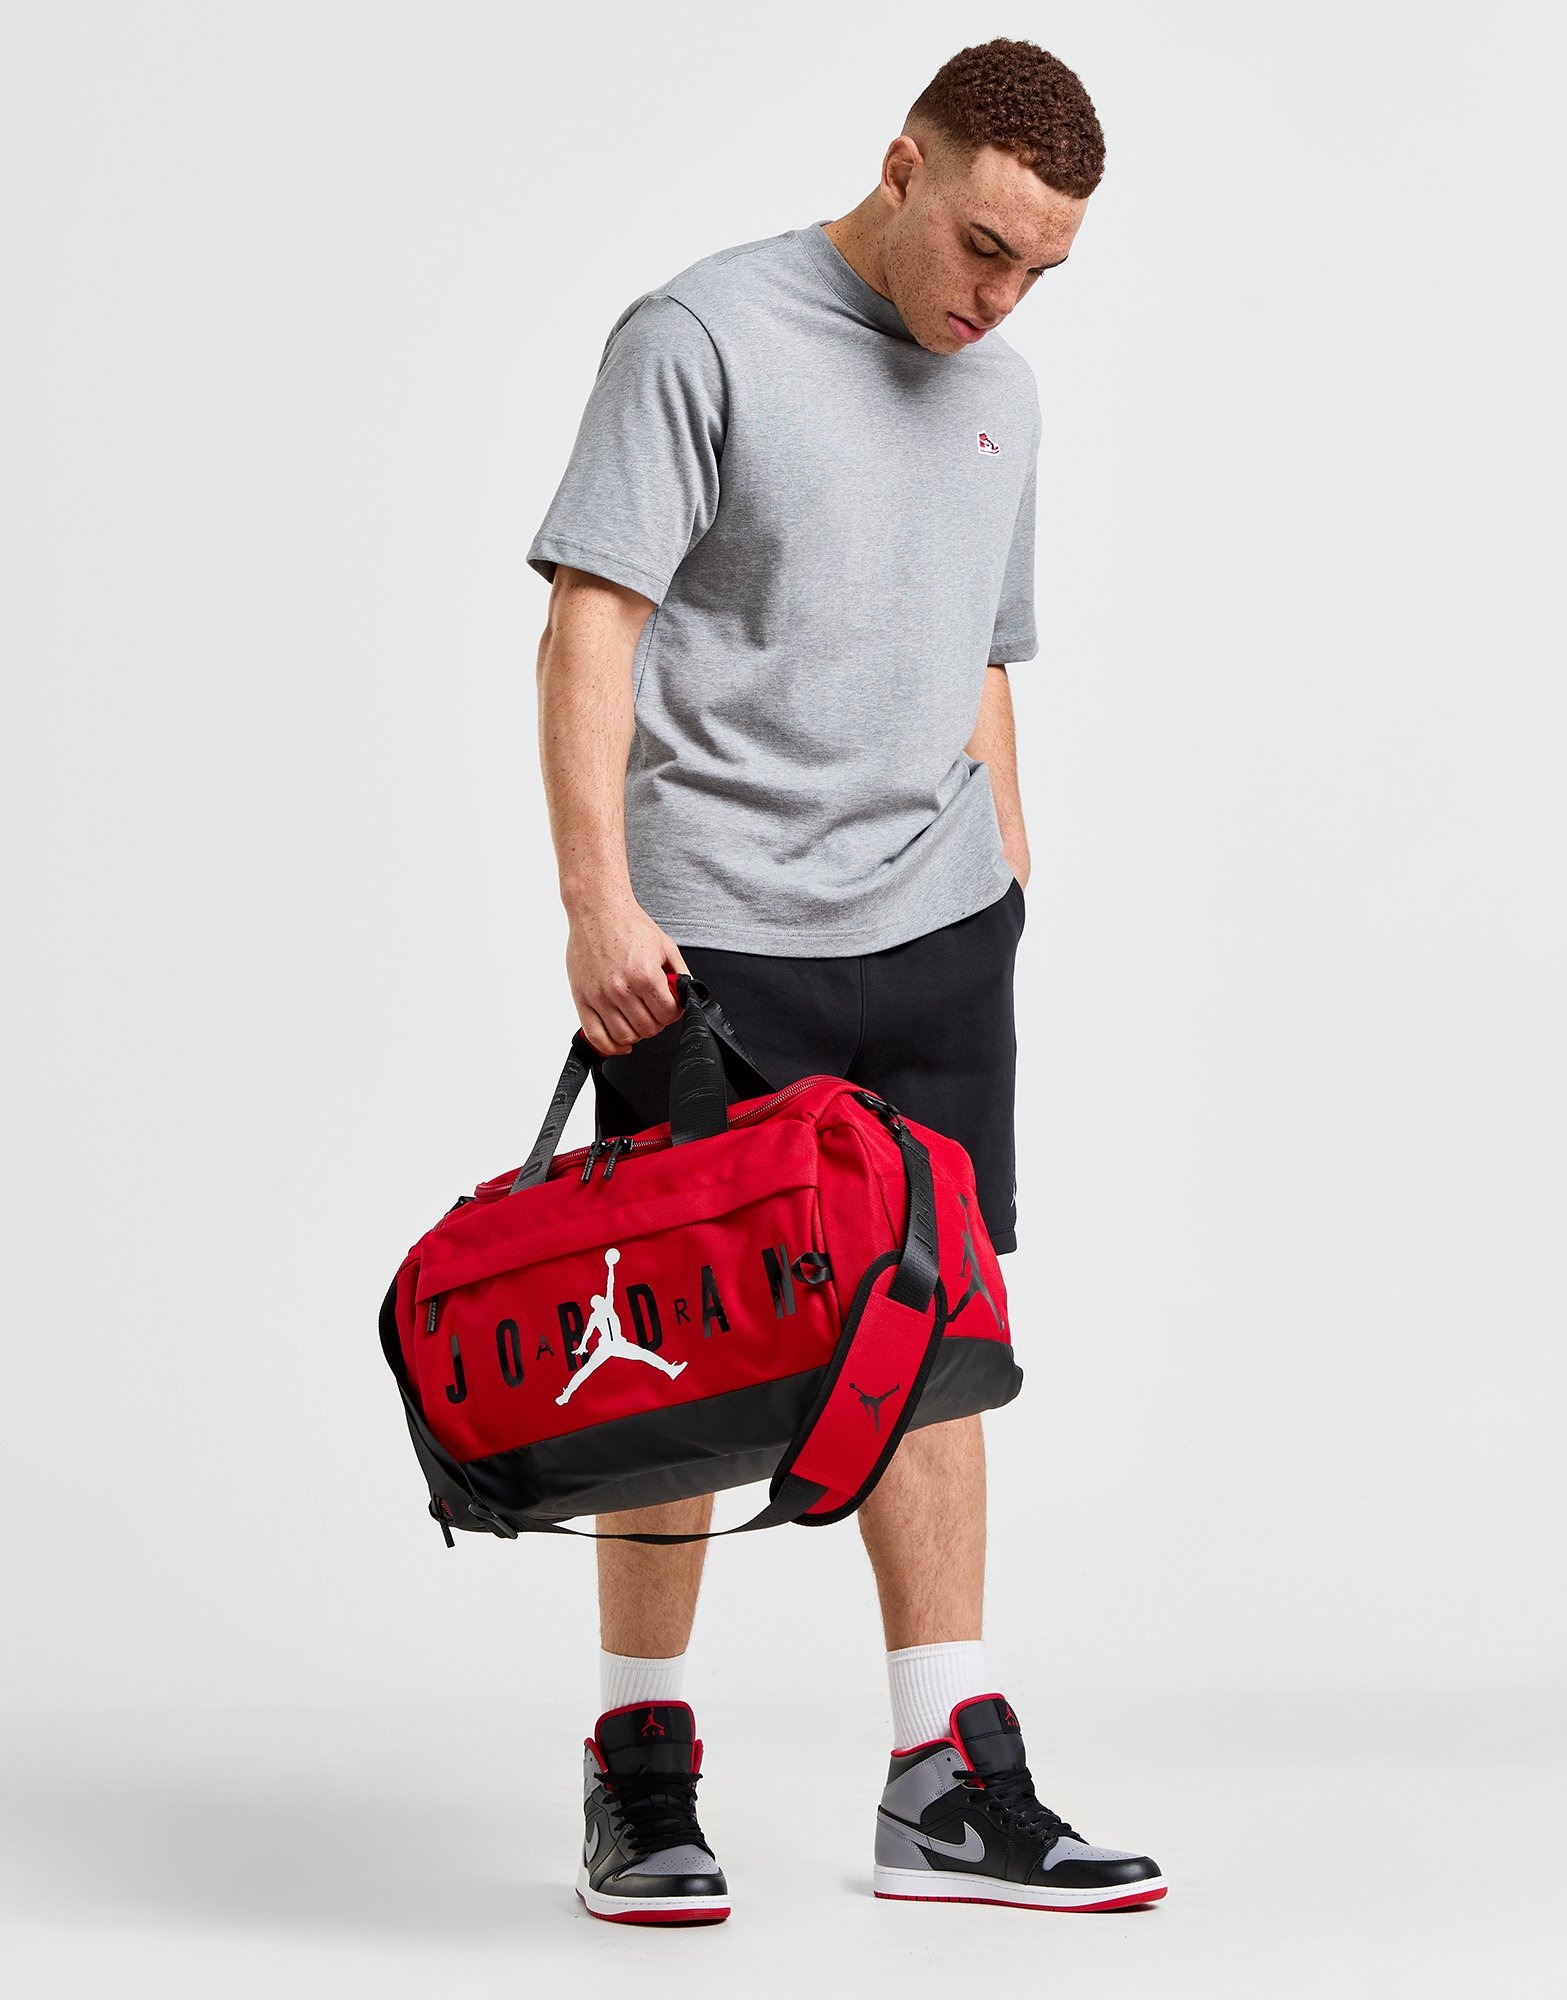 Red Jordan Duffle Bag - JD Sports Ireland